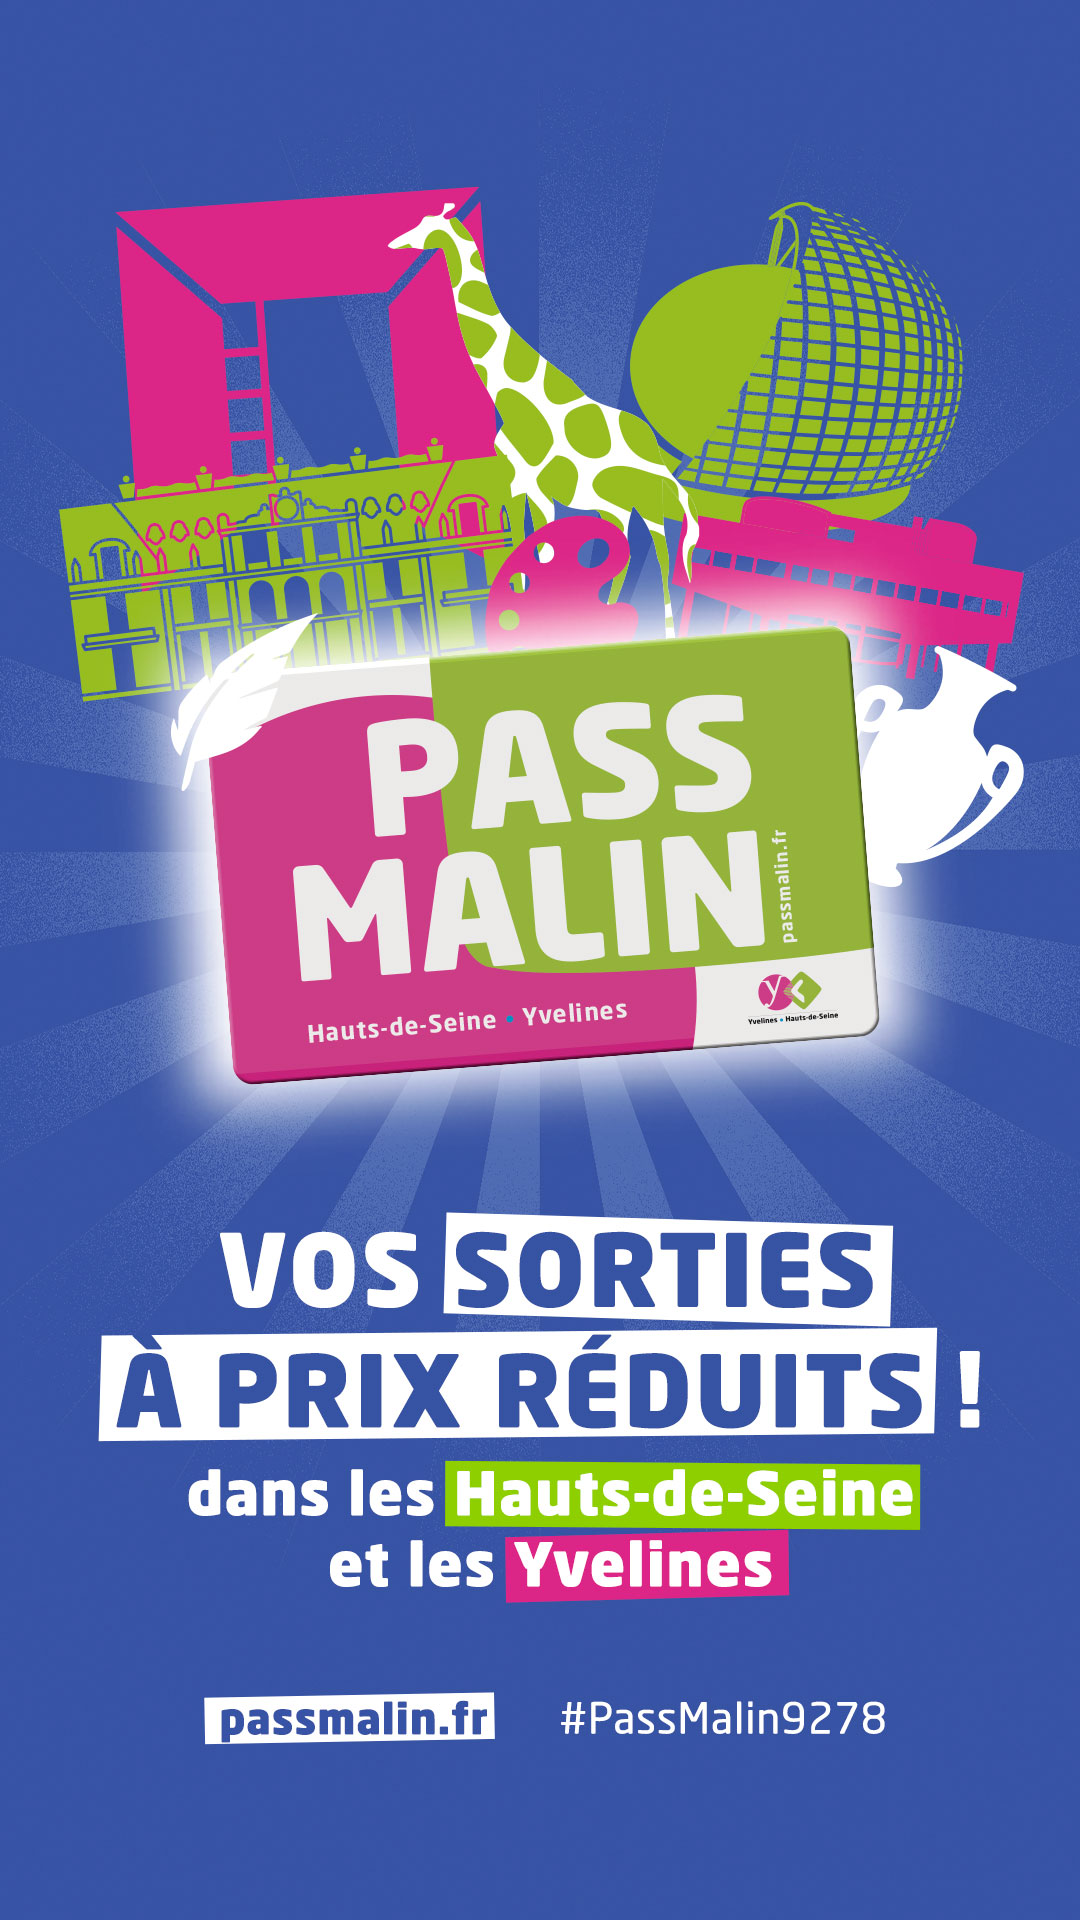 La Pass Malin Hauts-de-Seine-Yvelines, des réductions toute l'année 